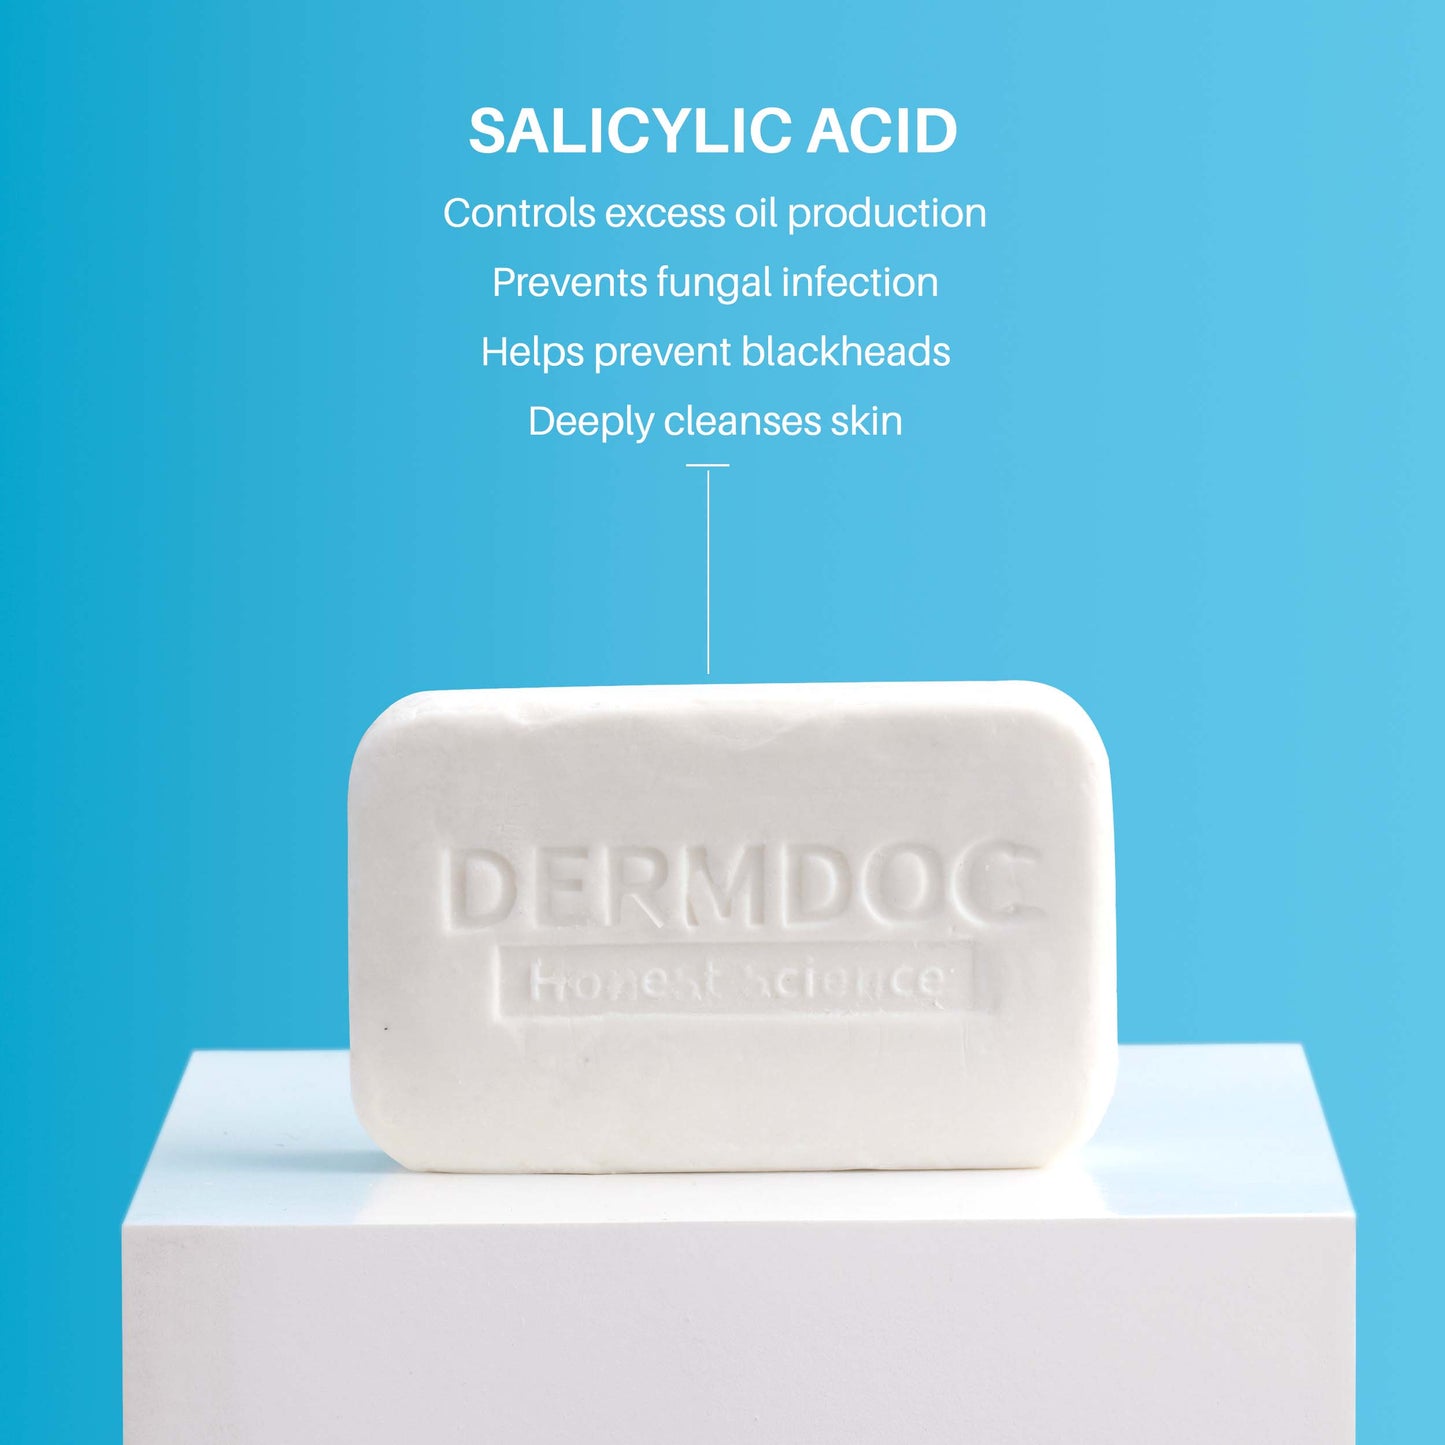 DermDoc 0.5% Salicylic Acid Cleansing Bar For Clear & Acne Free Skin (75g)